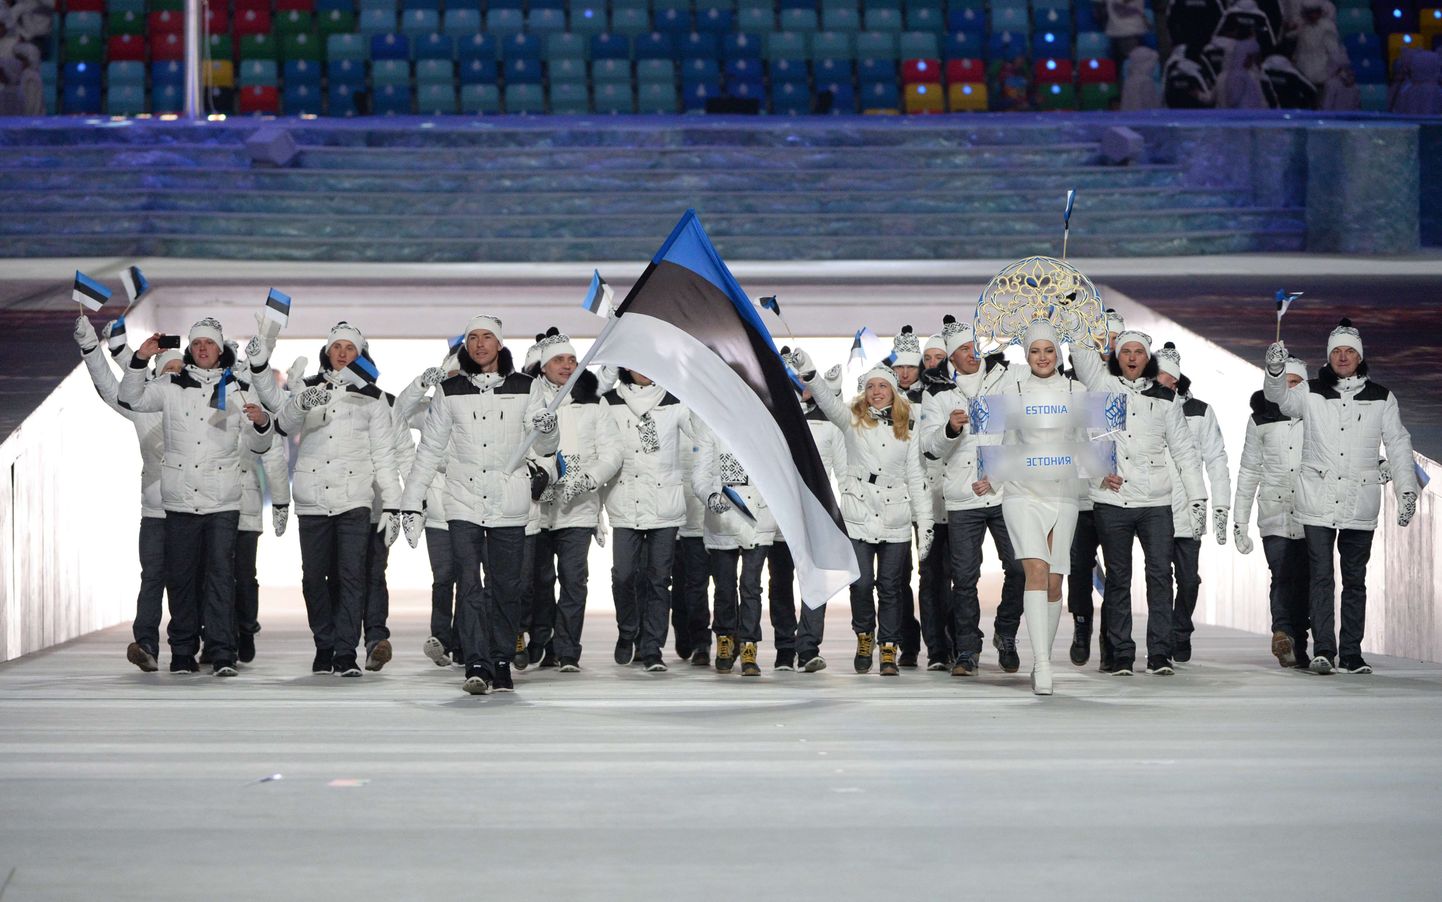 Eesti delegatsioon 2014. aasta Sotši taliolümpiamängude avatseremoonial. Pyeongchangis sama arvukat esindust ei näe.